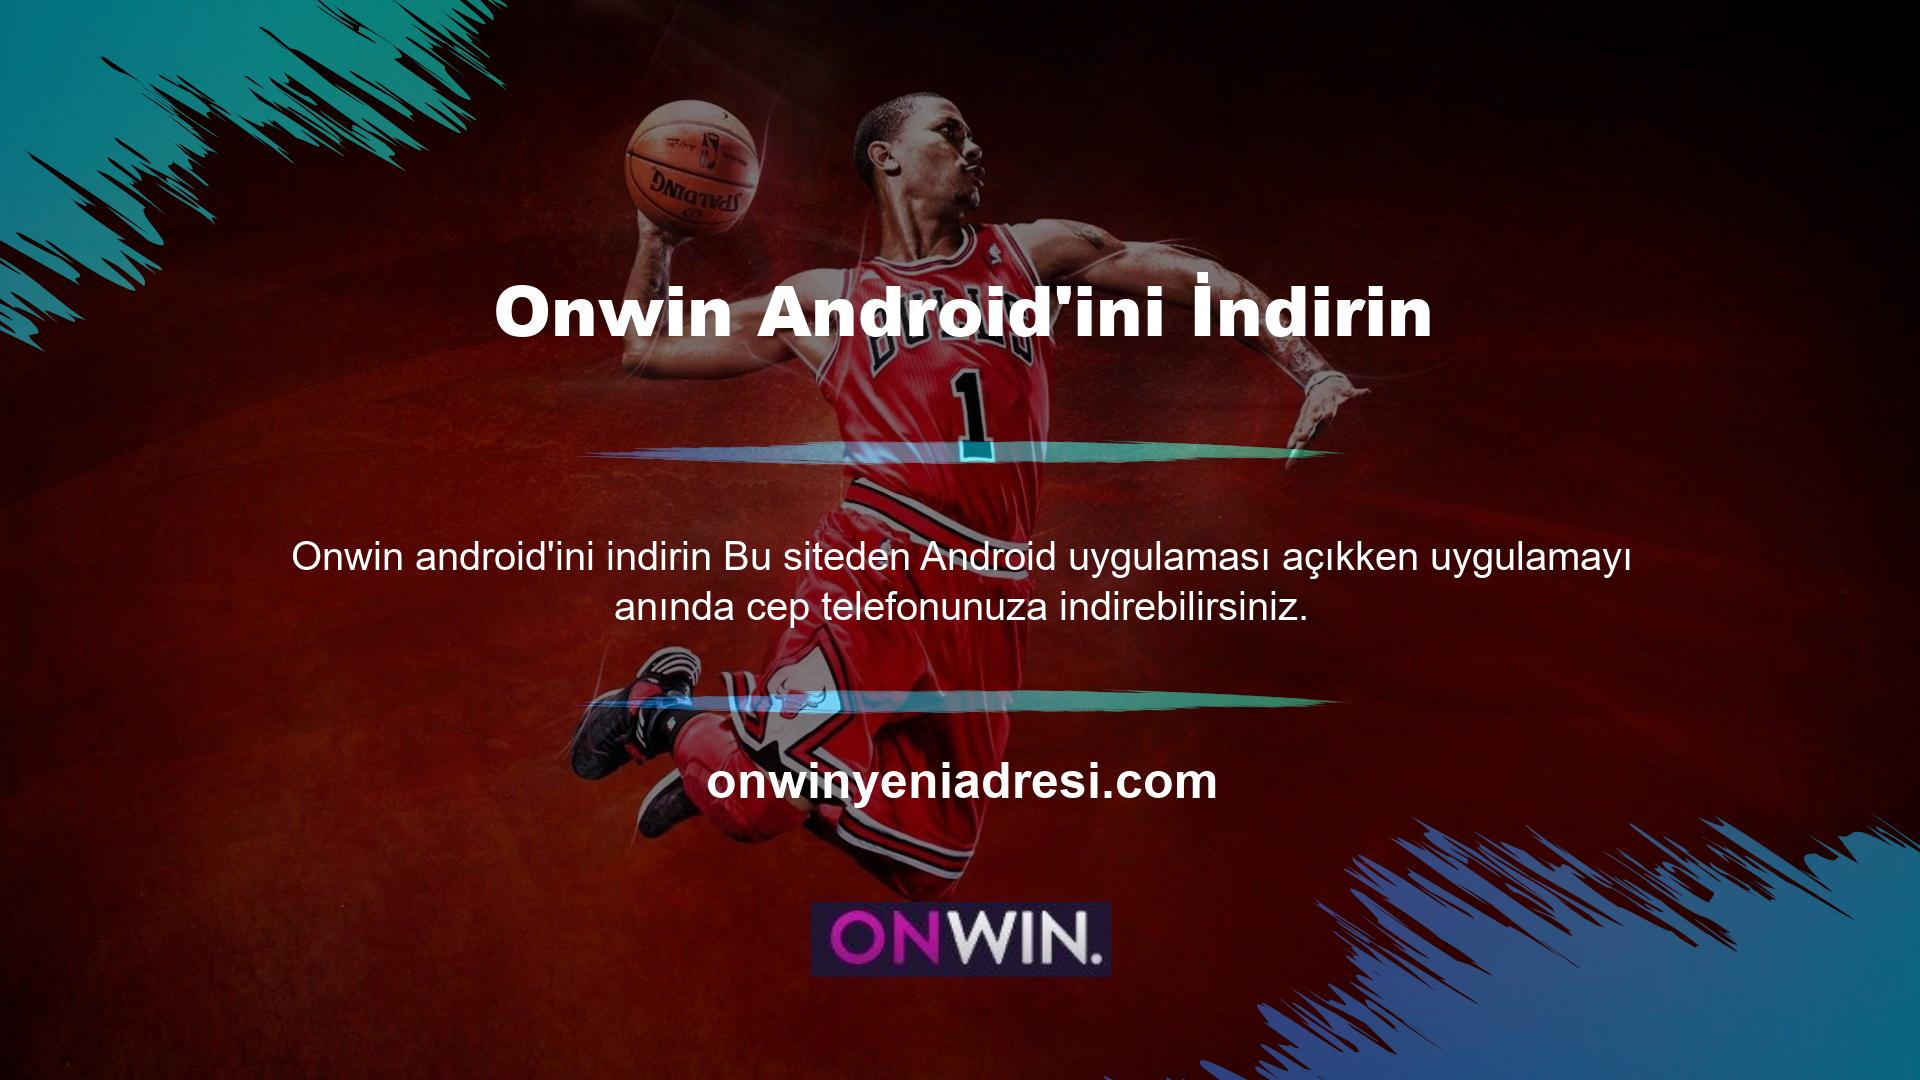 Sistem, iOS uygulaması gibi ücretsizdir ve Android uygulamasını destekleyen herhangi bir Onwin cep telefonundan indirilebilir